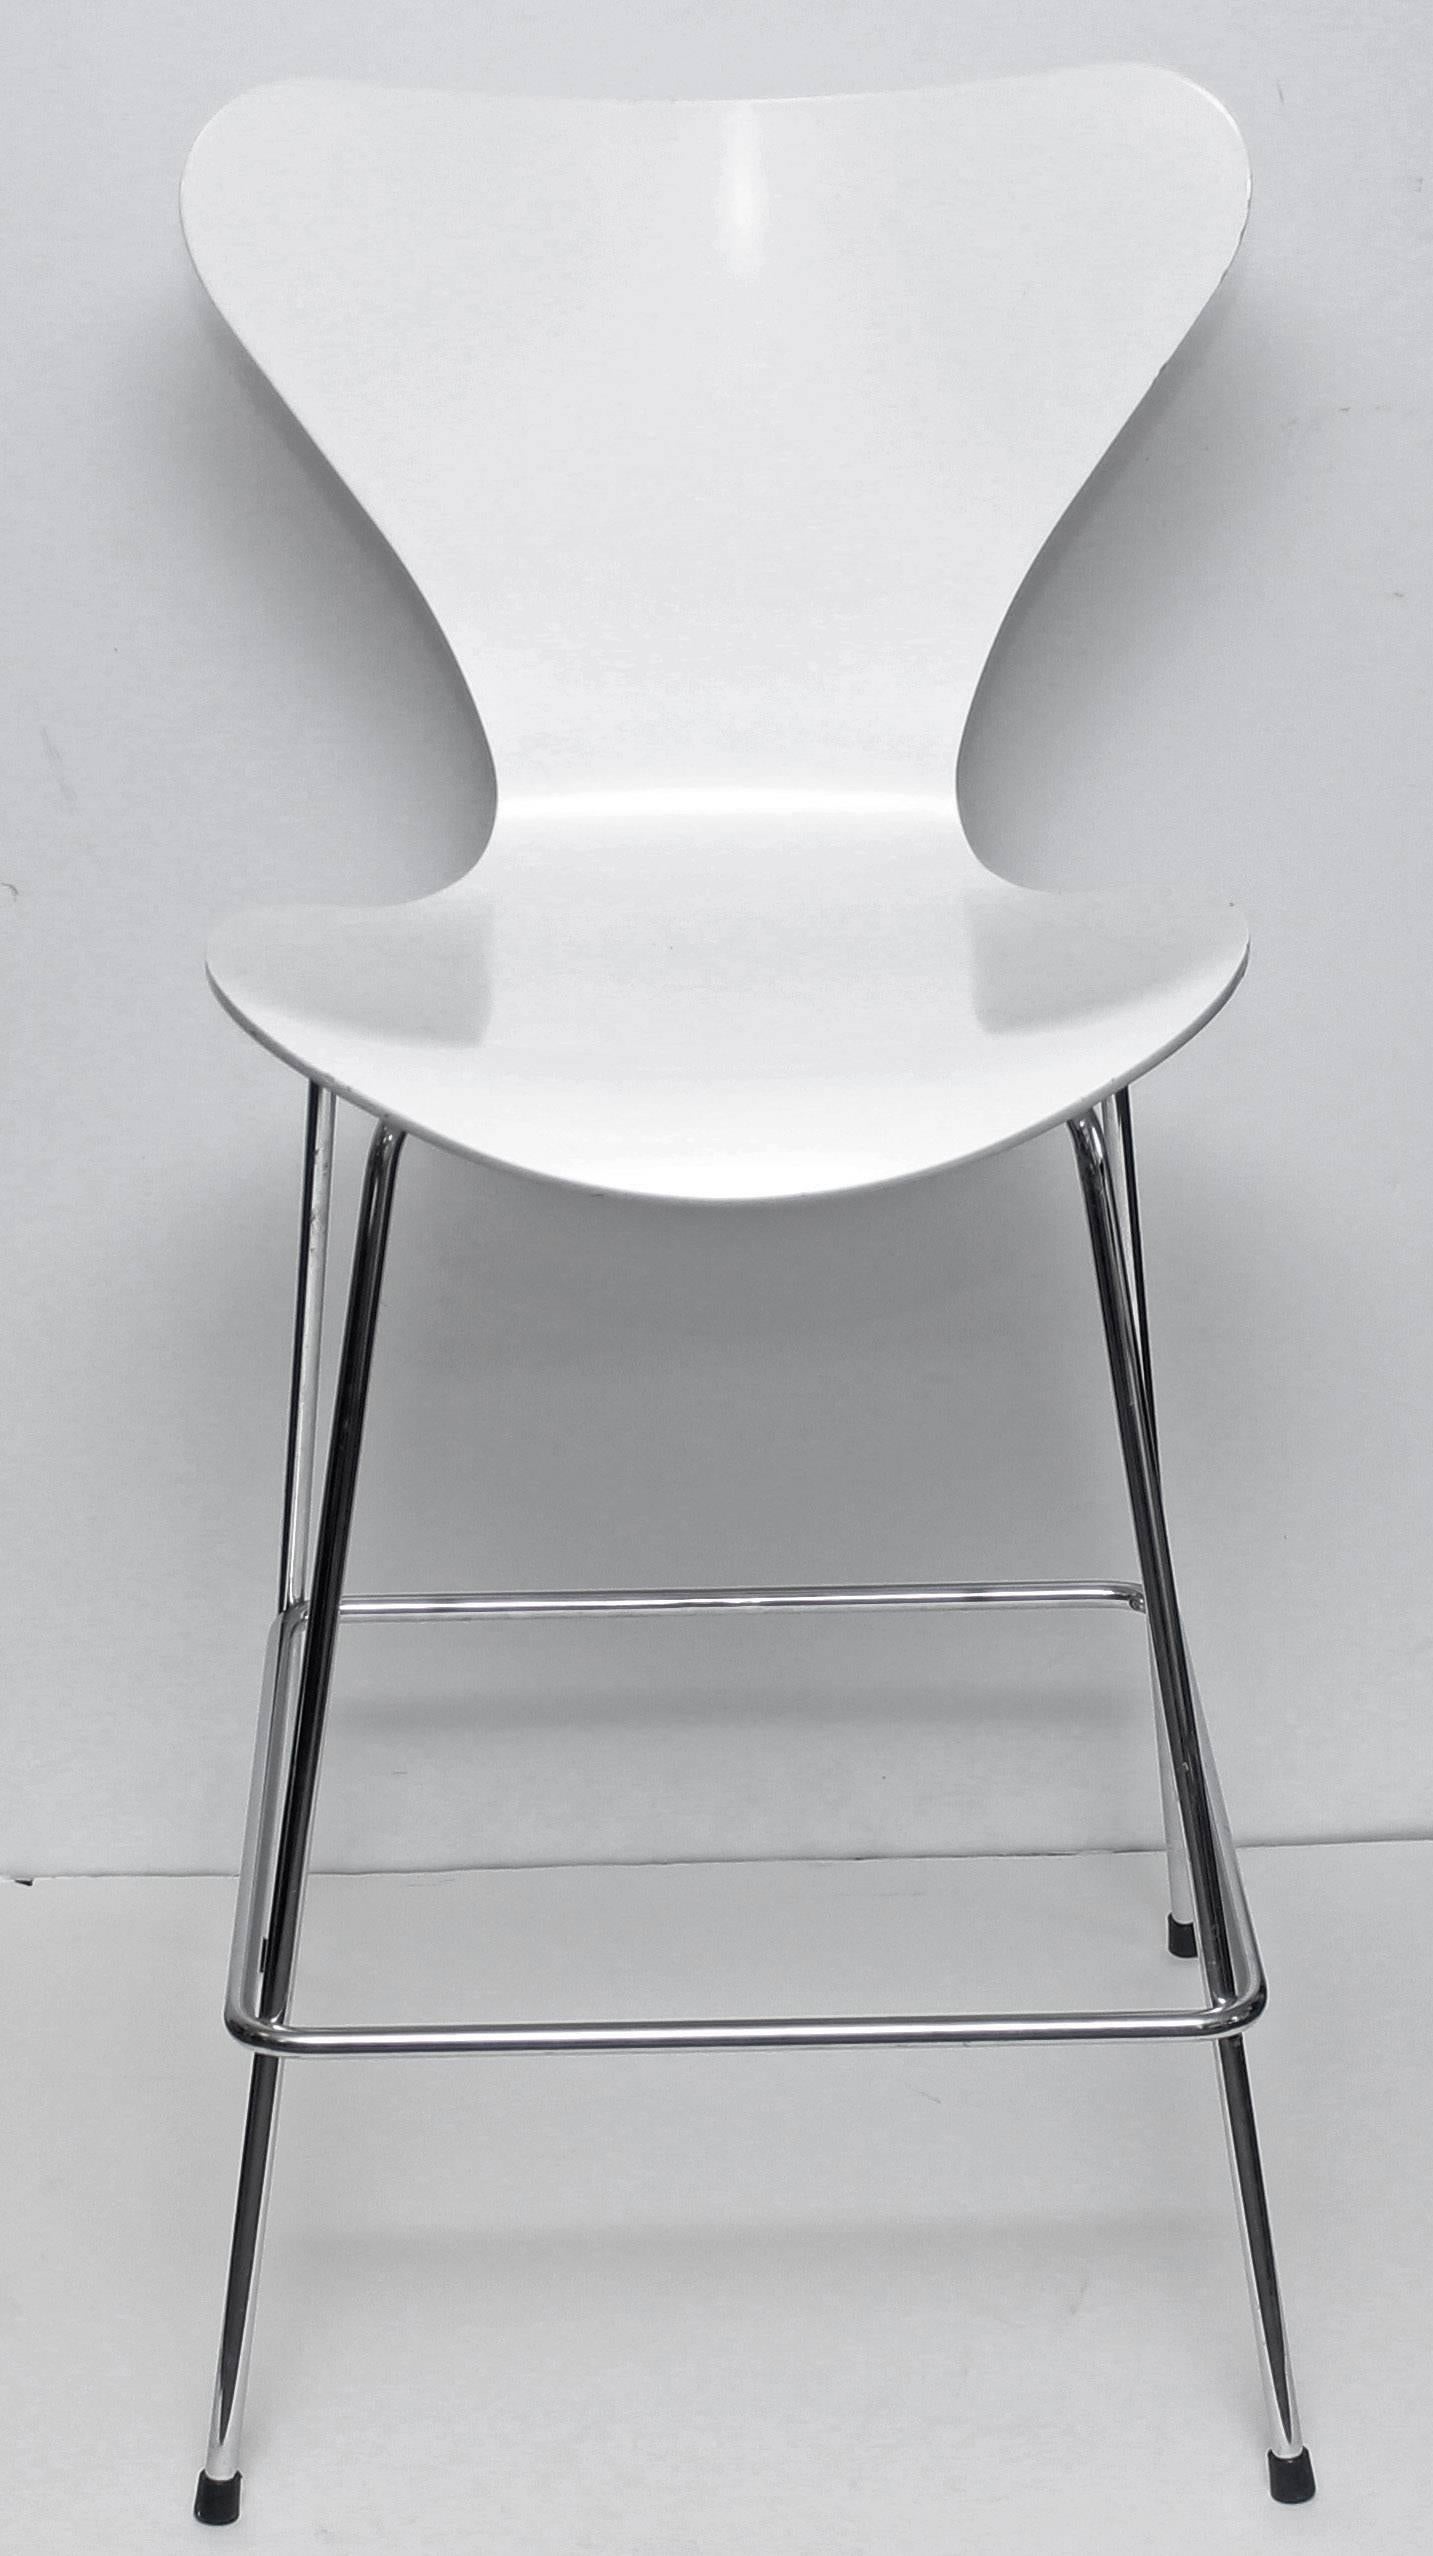 Lancome Schminkhocker für Kaufhaus-Schminktheken. Entworfen von Arne Jacobsen für Fritz Hansen.  Sitz aus gebogenem Sperrholz.